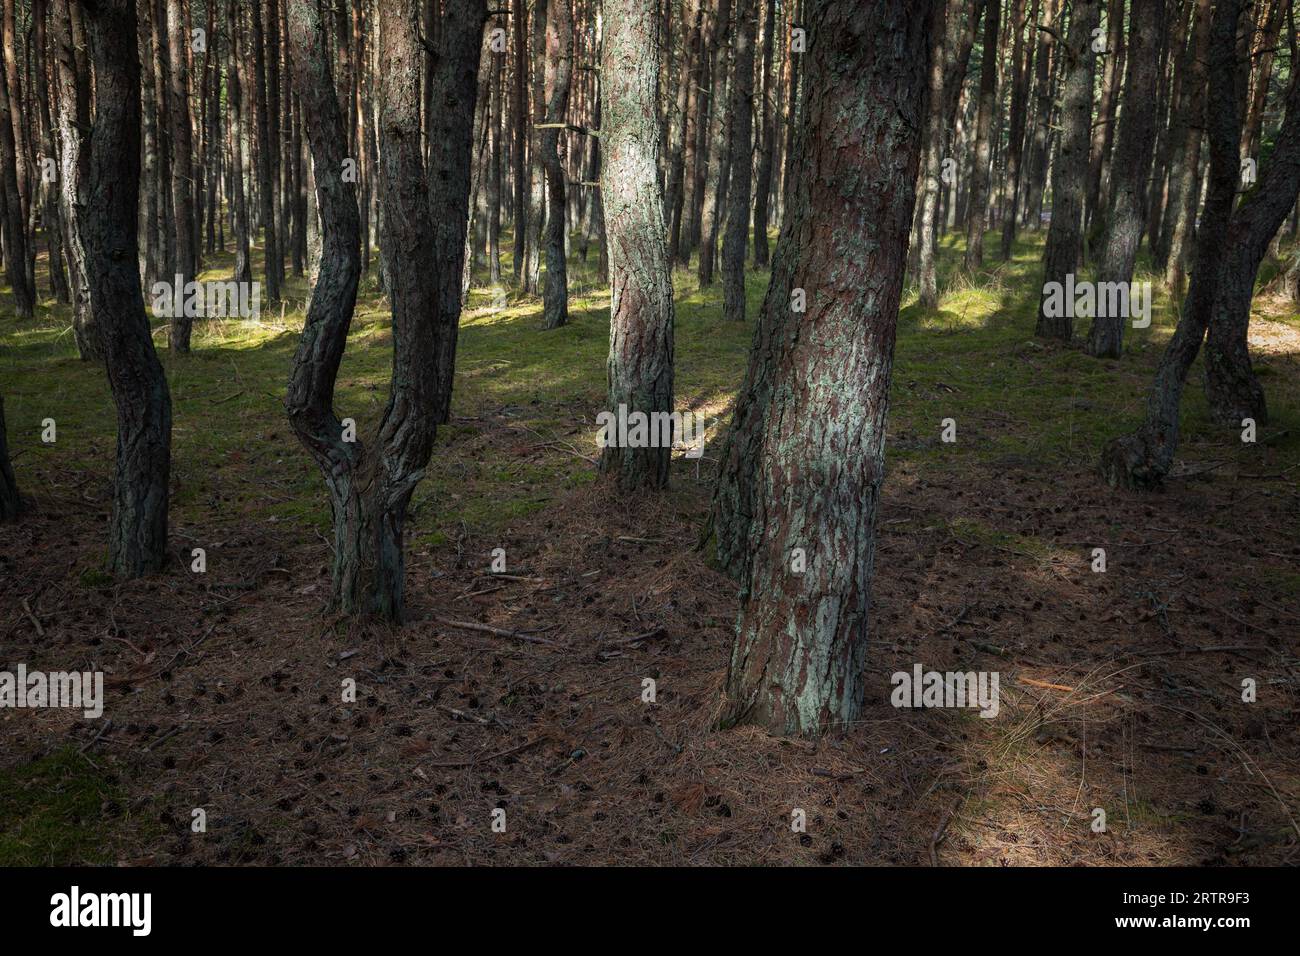 Landschaftsfoto des Tanzenden Waldes. Kiefernwald an der Kurischen Nehrung in der Oblast Kaliningrad, Russland, bekannt für seine ungewöhnlich verdrehten Bäume Stockfoto